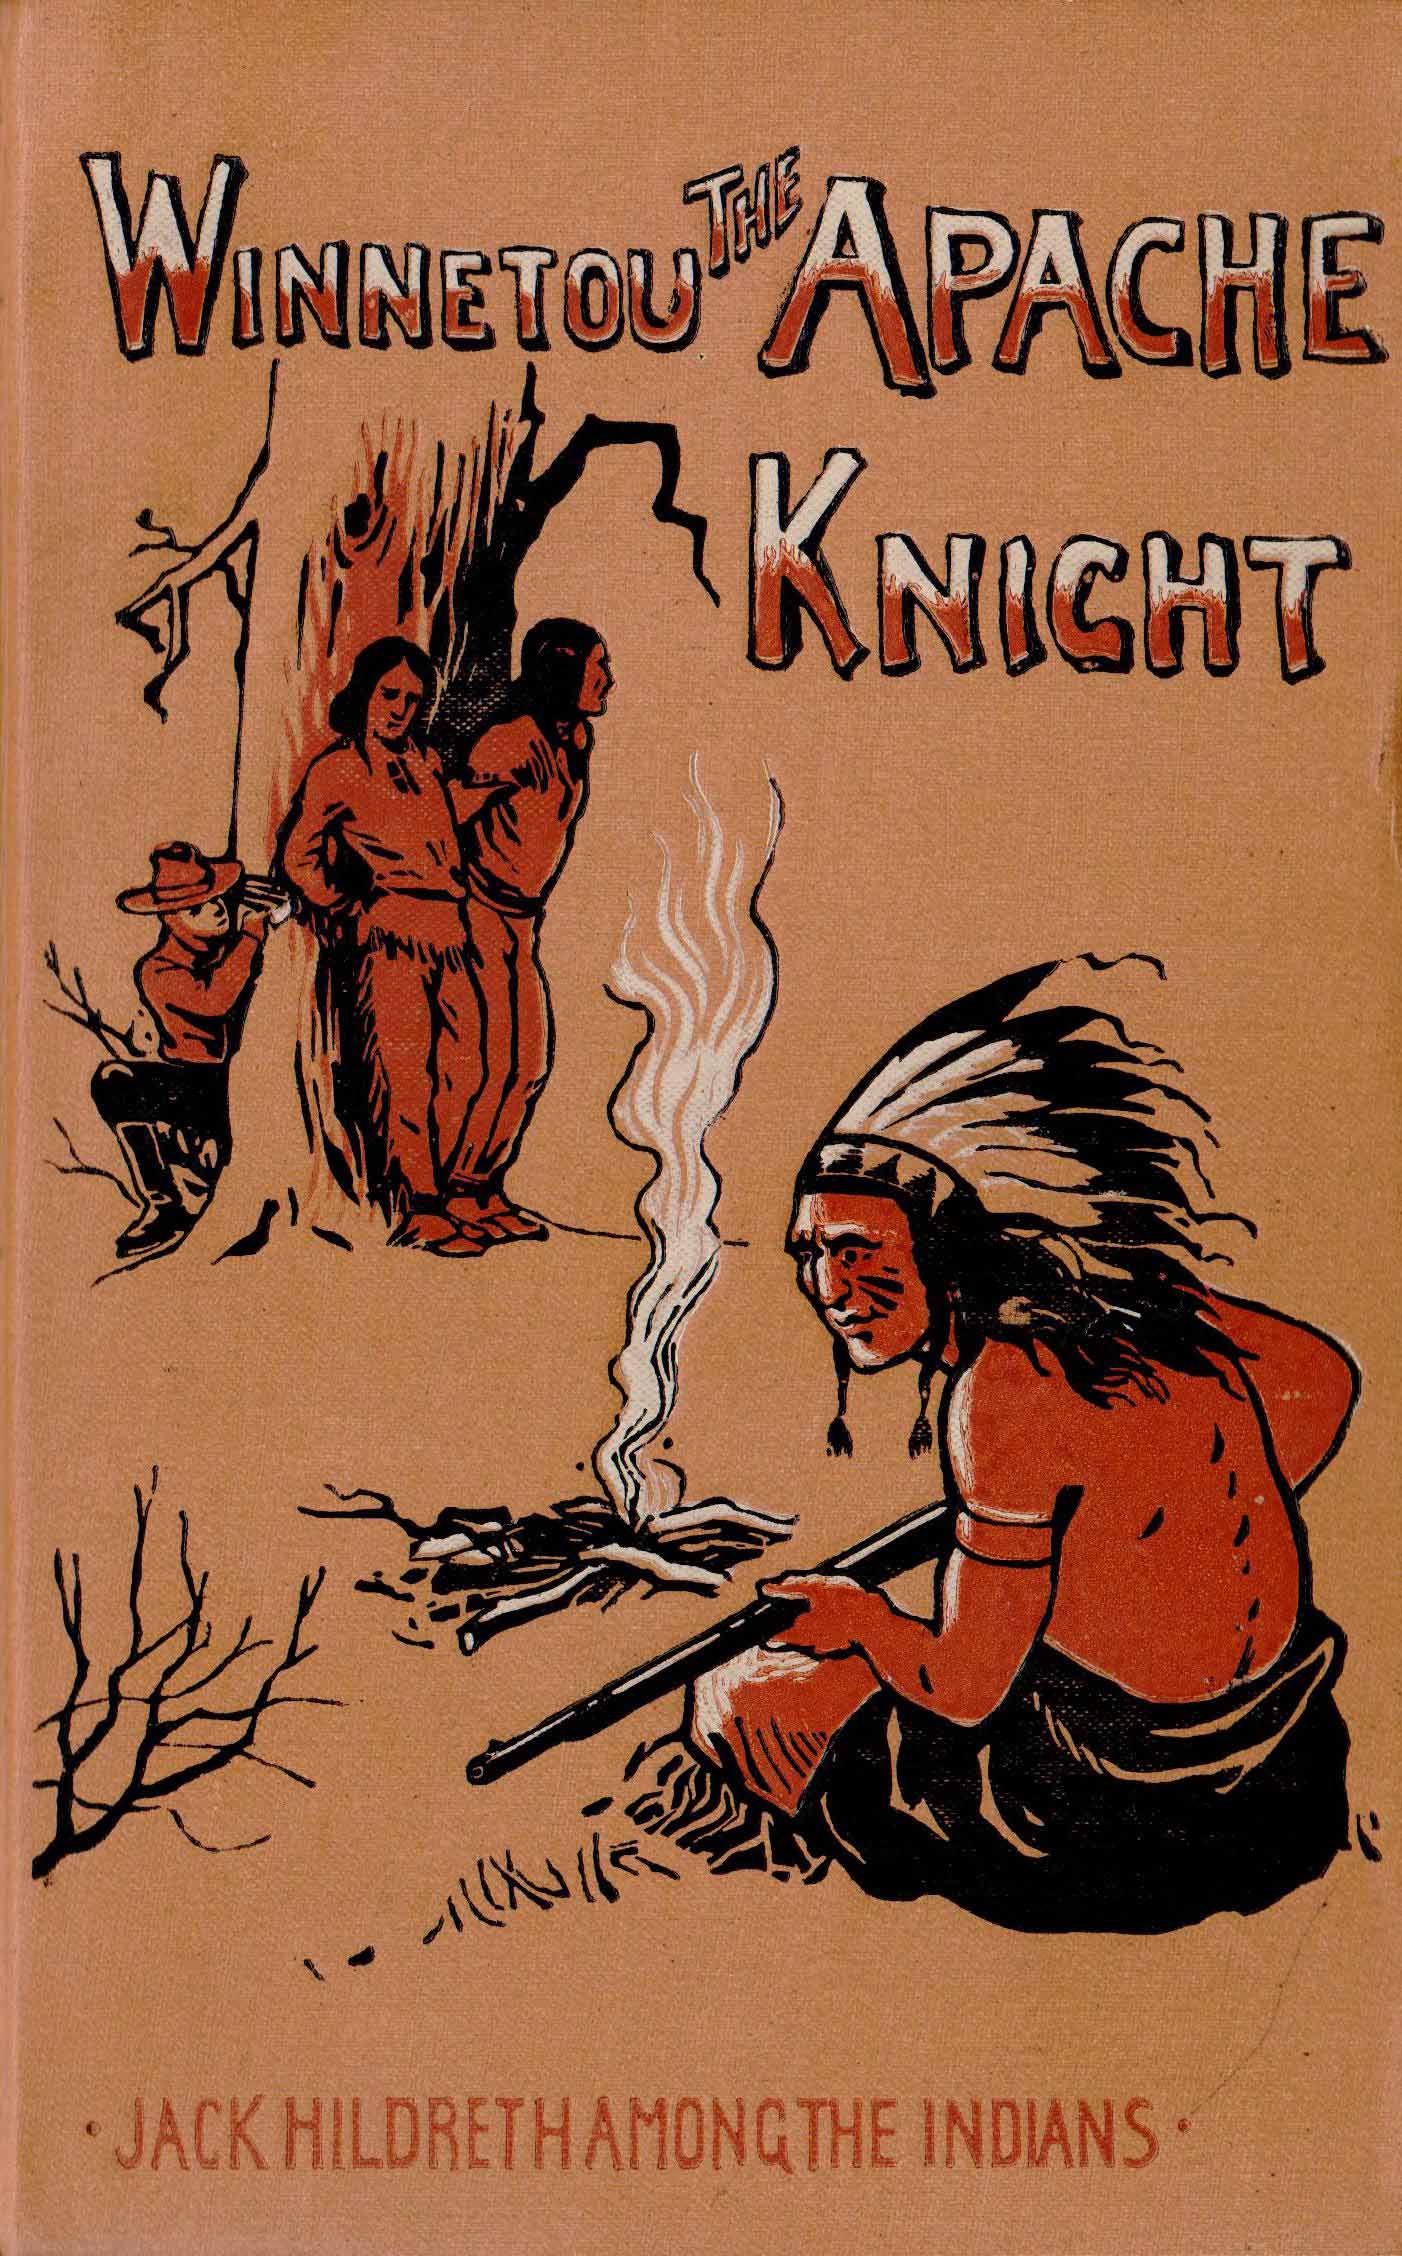 Titelblatt von „Winnetou the Apache Knight“, bearbeitet und übersetzt von Marion Ames Taggart, erschienen 1898 in New York im Verlag der Benziger Brothers. Karl May, der Autor der deutschen Vorlage, wird in dieser Ausgabe mit keinem Wort erwähnt.